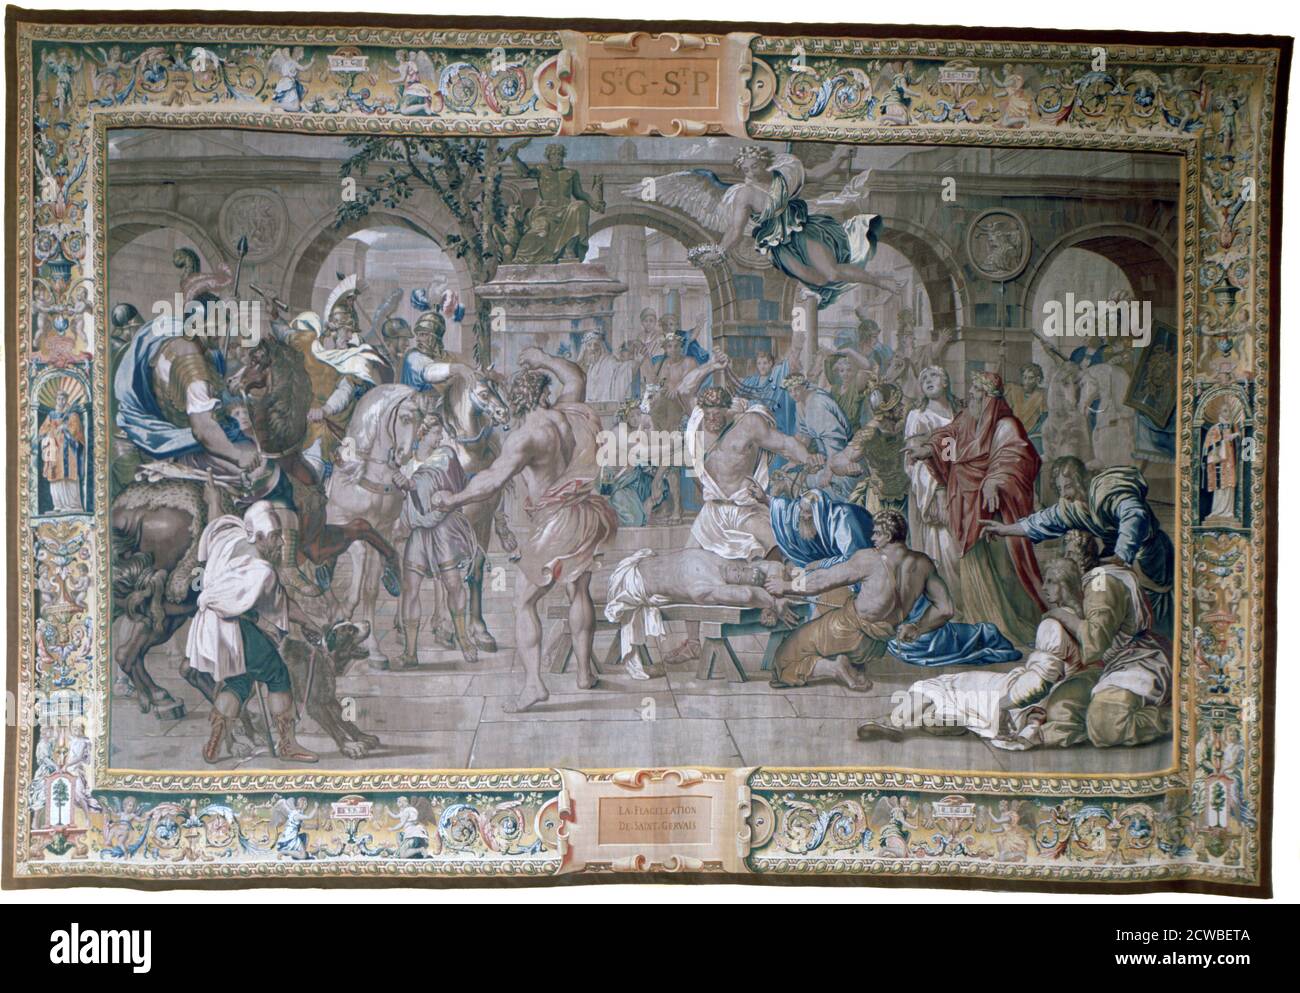 La flagellation de St Gervais, c1620-1670. Artiste: Philippe de Champaigne. Philippe de Champaigne (1602-1674) est un peintre de l'époque baroque française, un important représentant de l'école française. Banque D'Images